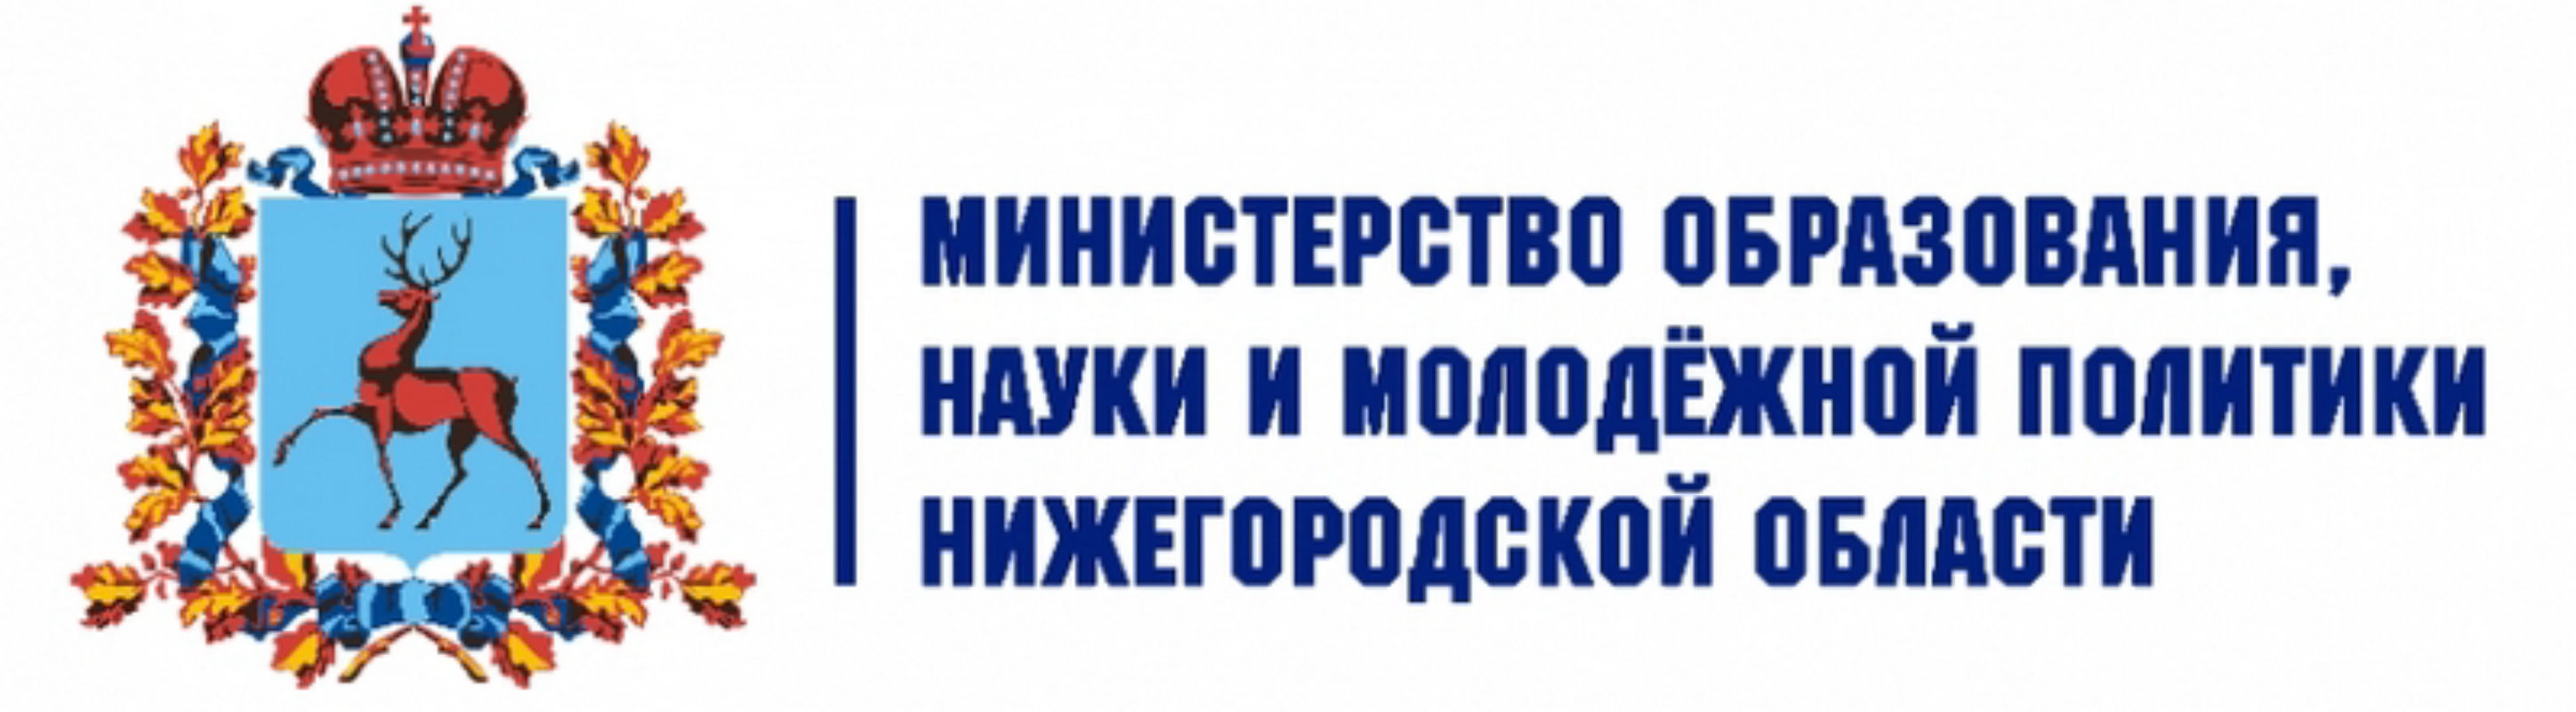 Министерство образования Нижегородской области лого